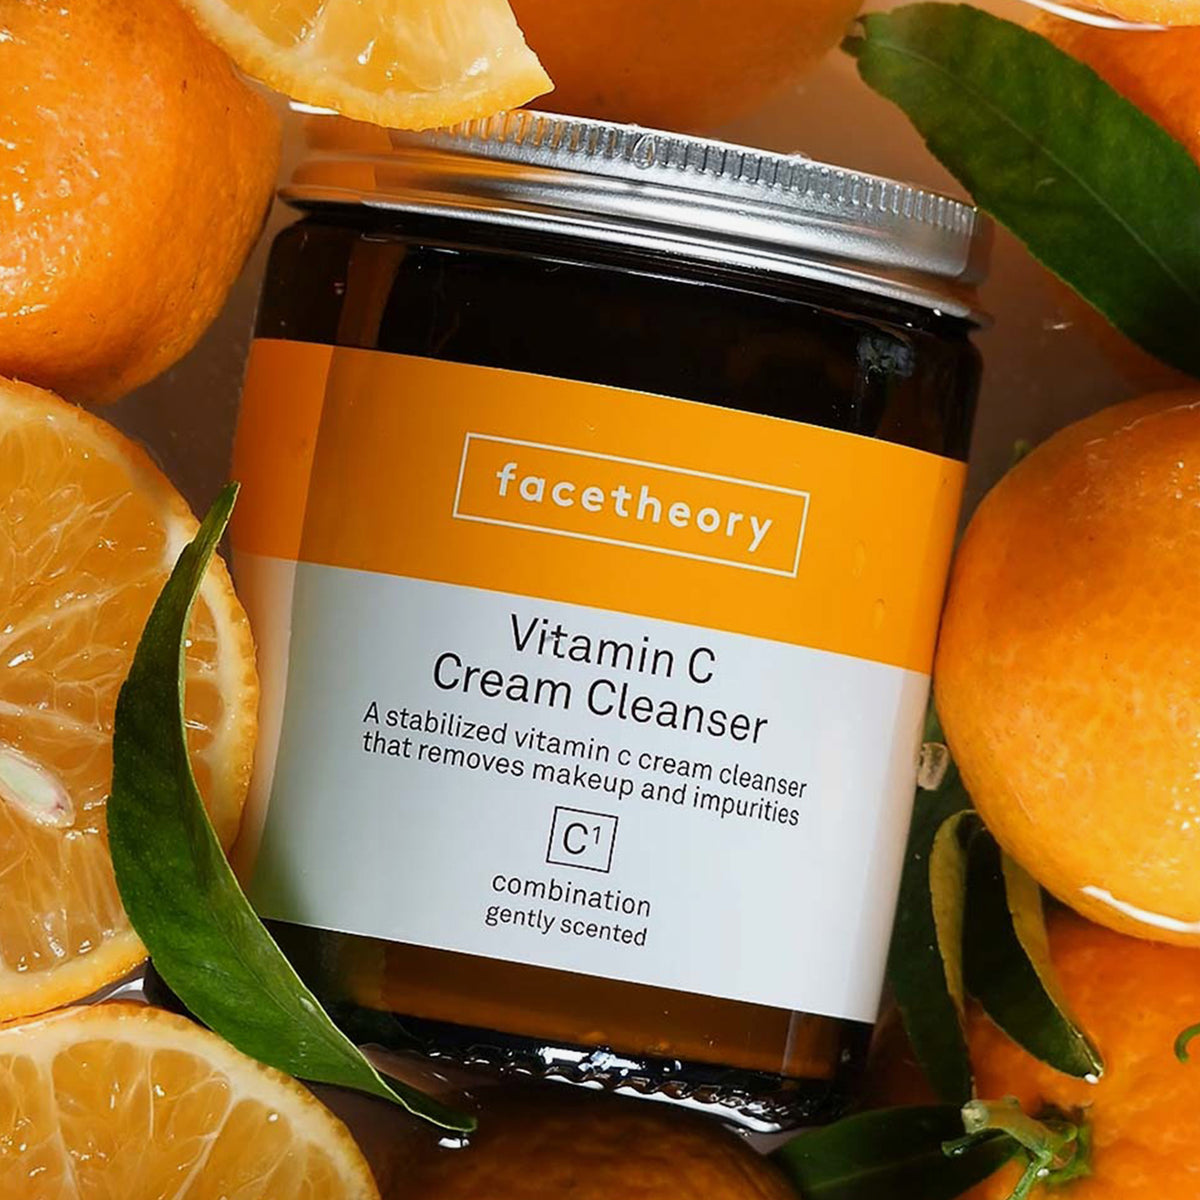 Vitamin C Cream Cleanser C1